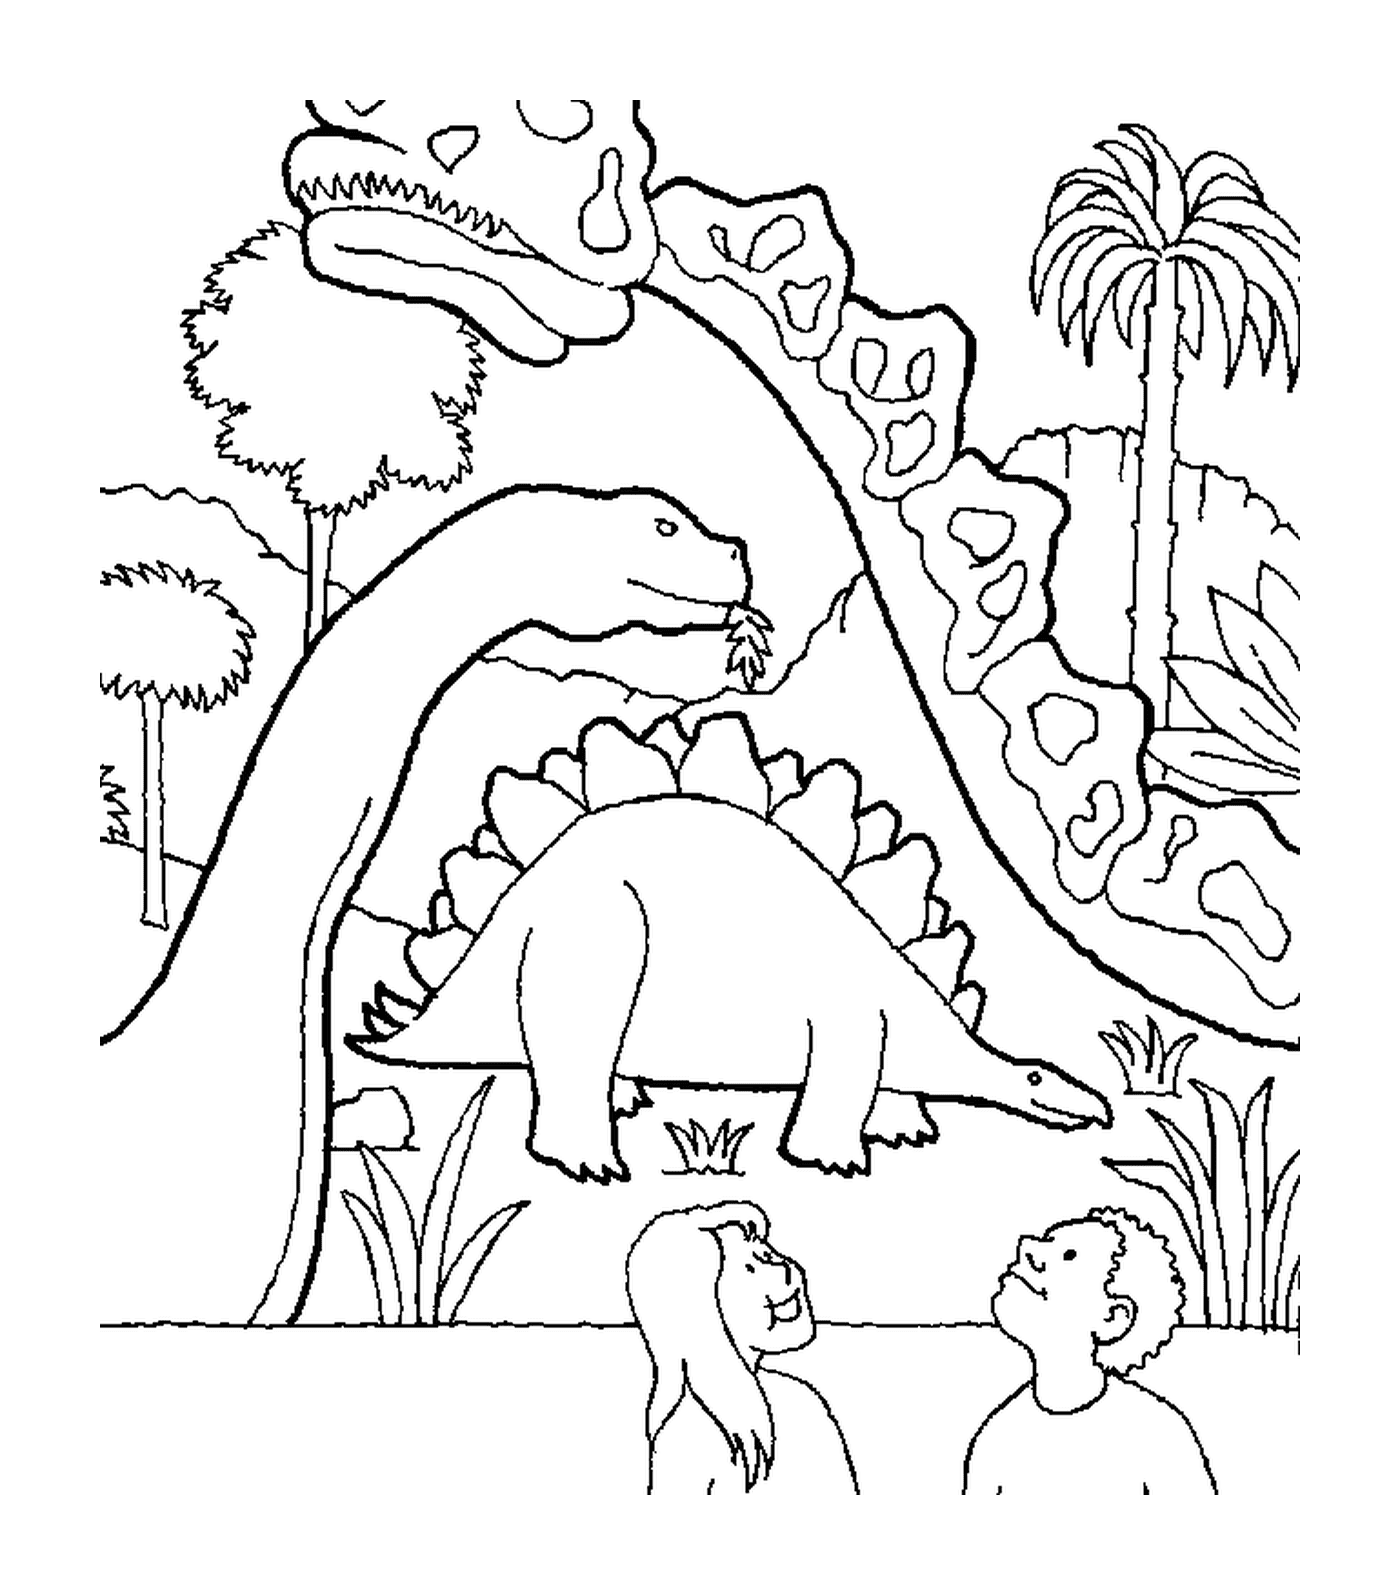  Dinossauro cercado por outros dois dinossauros 